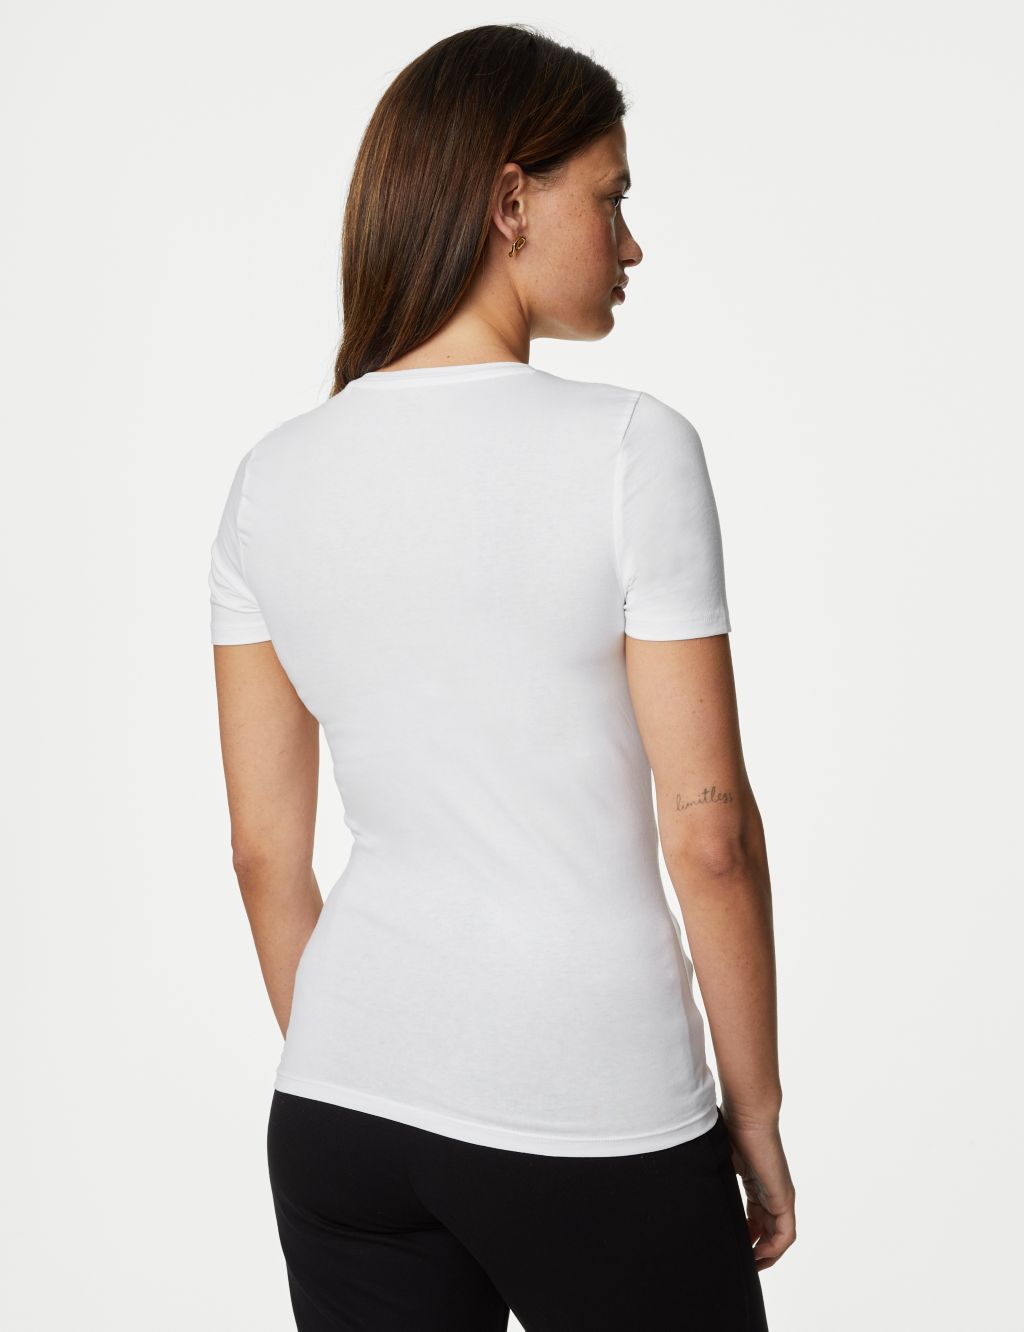 Cotton Rich Slim Fit T-Shirt image 4